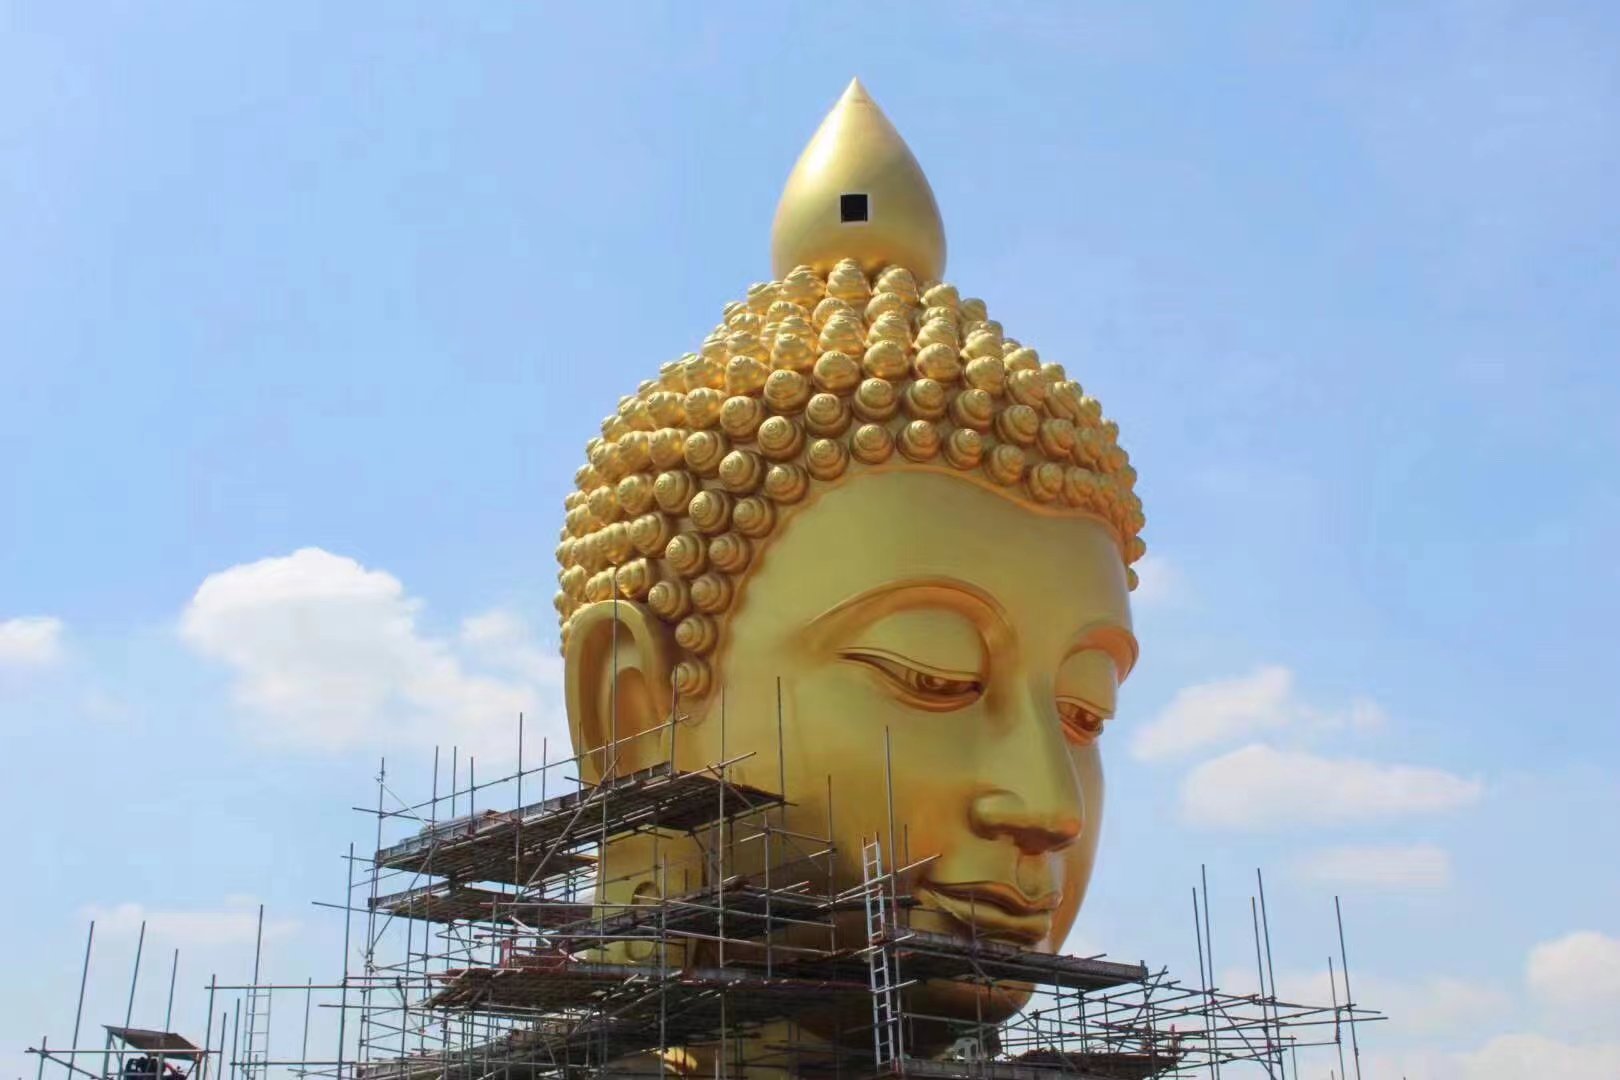 Customized Buddha Statue